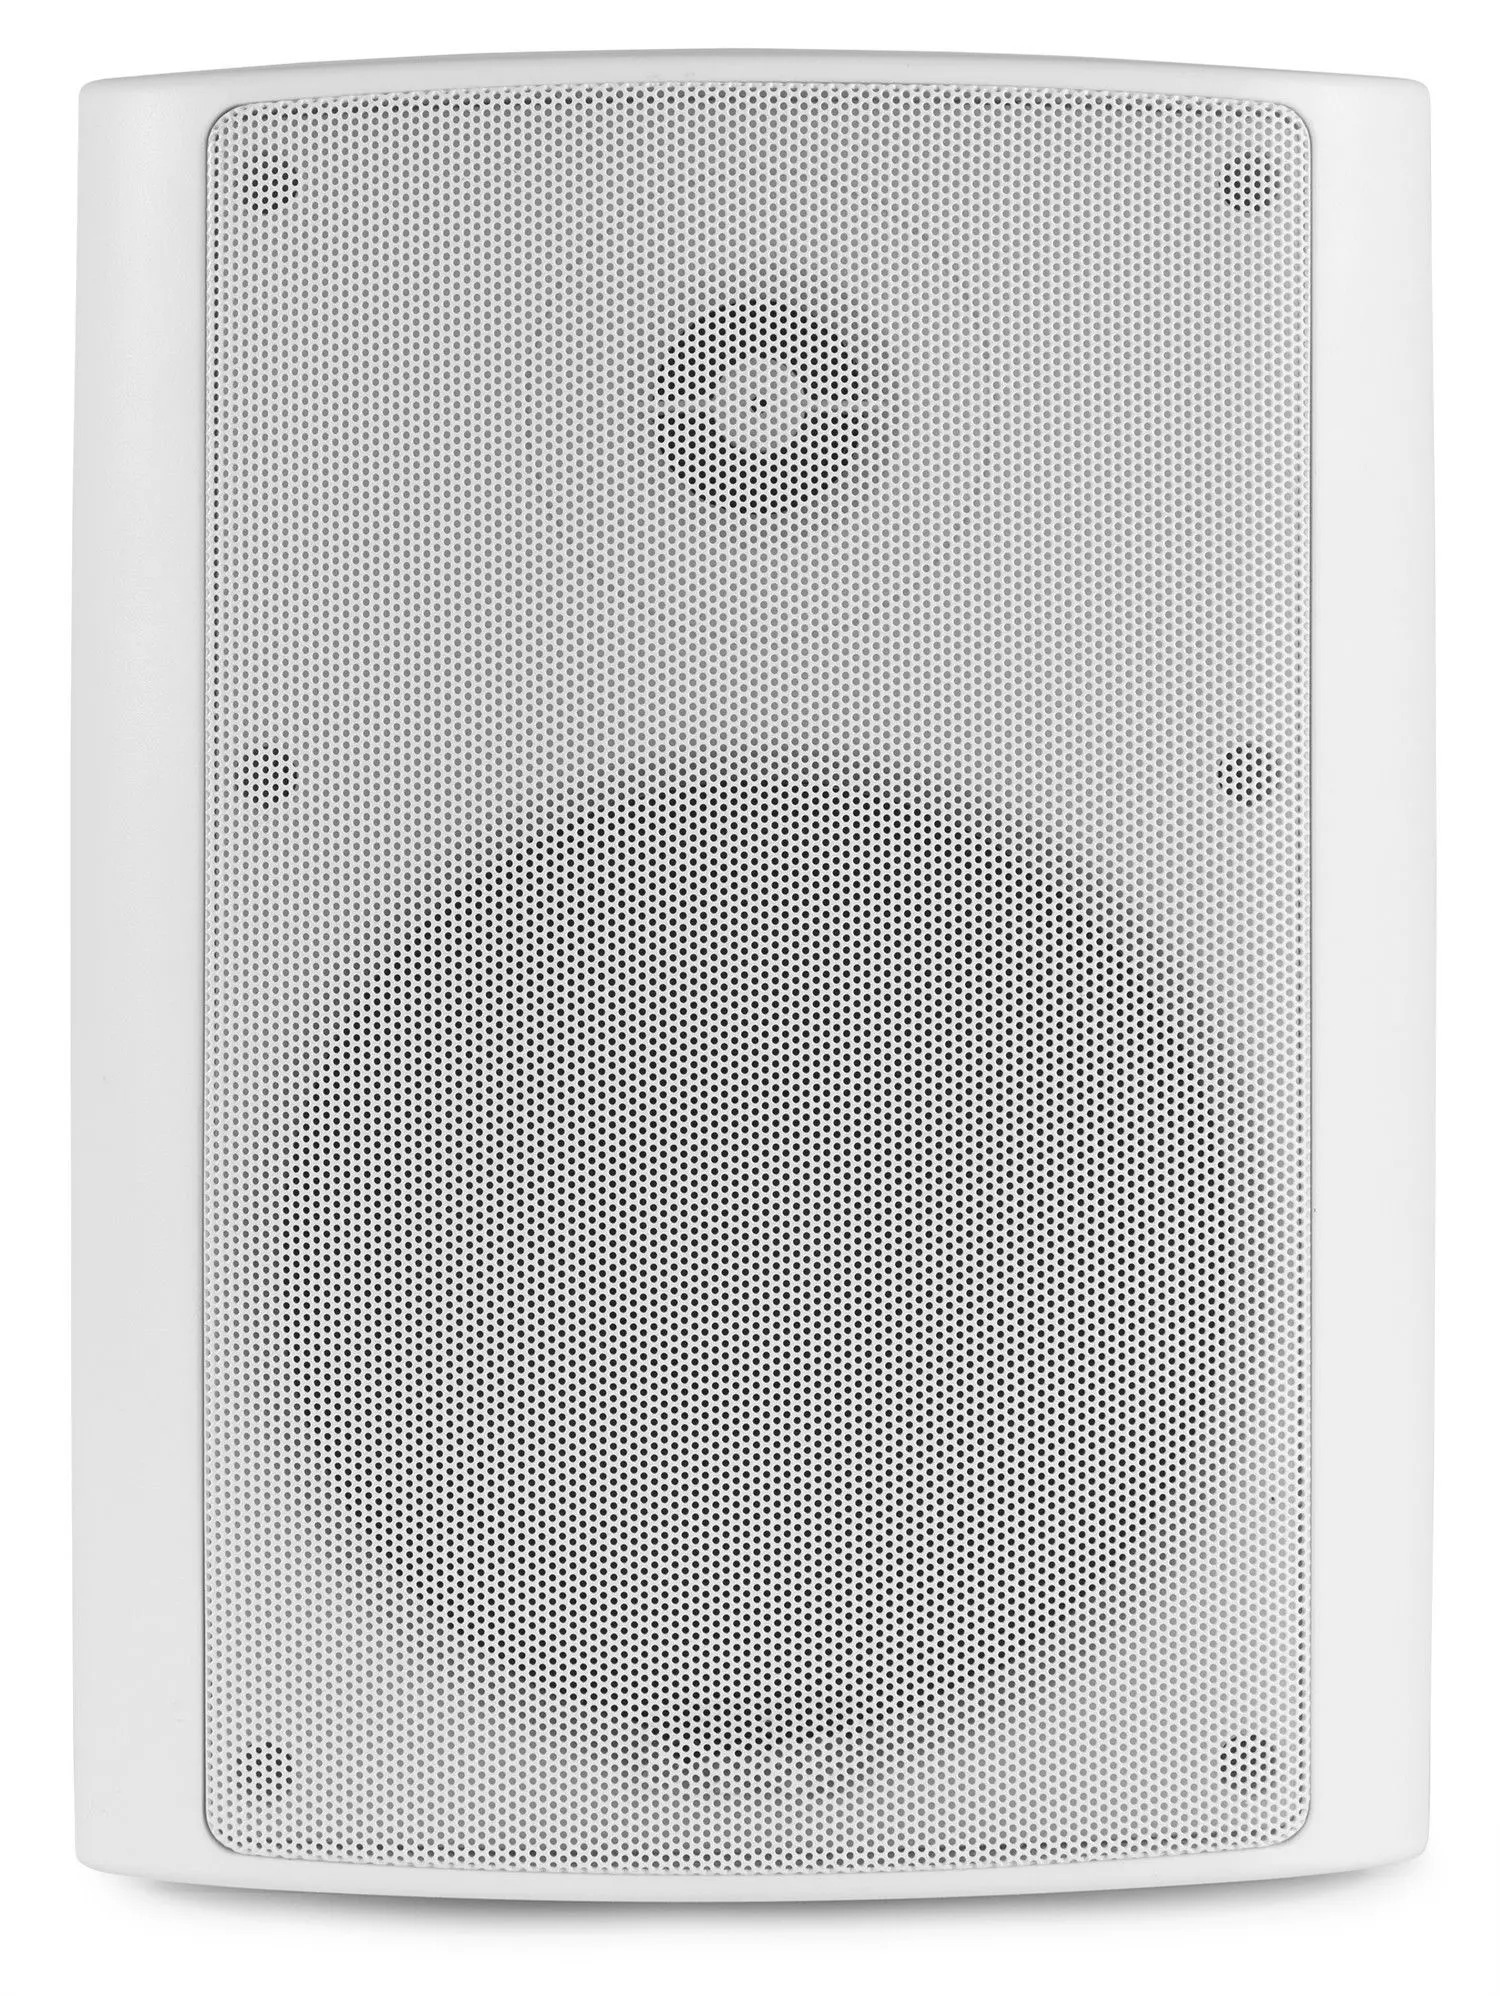 Retourdeal power dynamics bgo65 witte speakerset voor binnen en 5